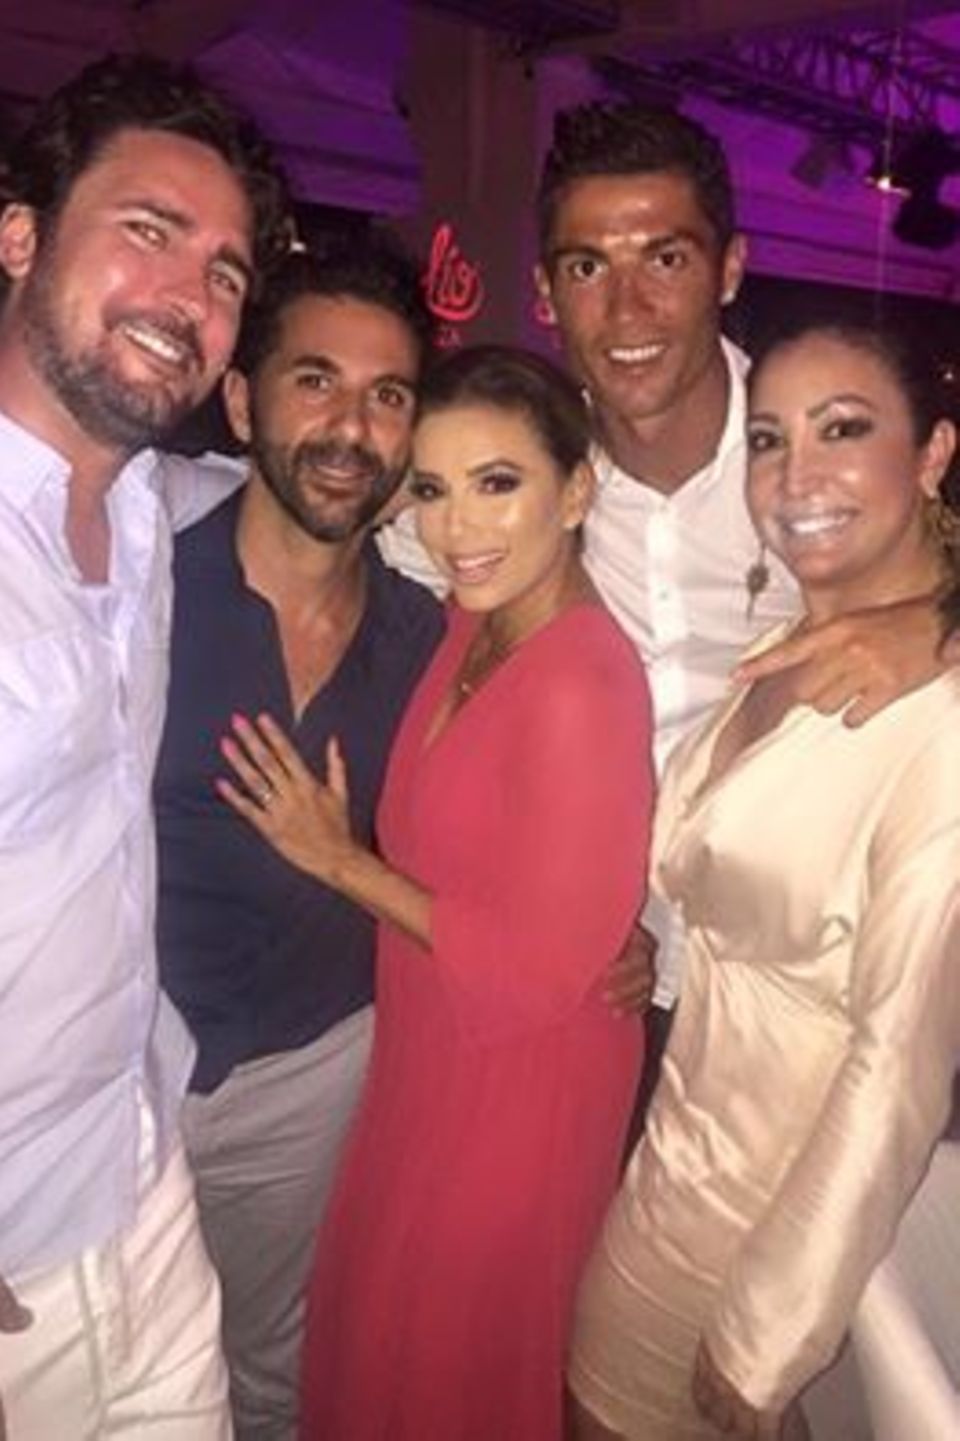 Fußballstar Cristiano Ronaldo freut sich über die Party mit Schauspielerin Eva Longoria Bastón und ihrem Ehemann José Bastón.